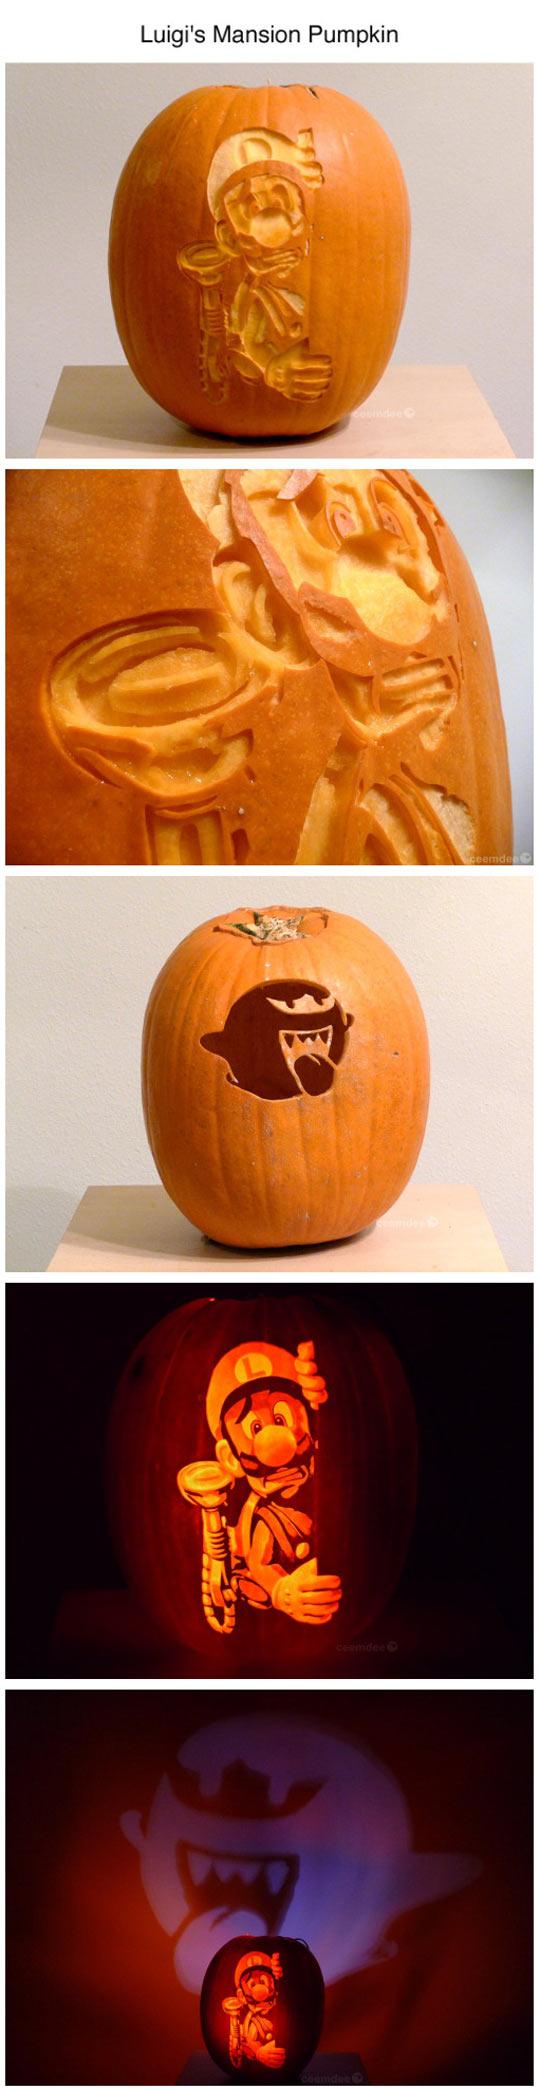 Luigi's Mansion Pumpkin art